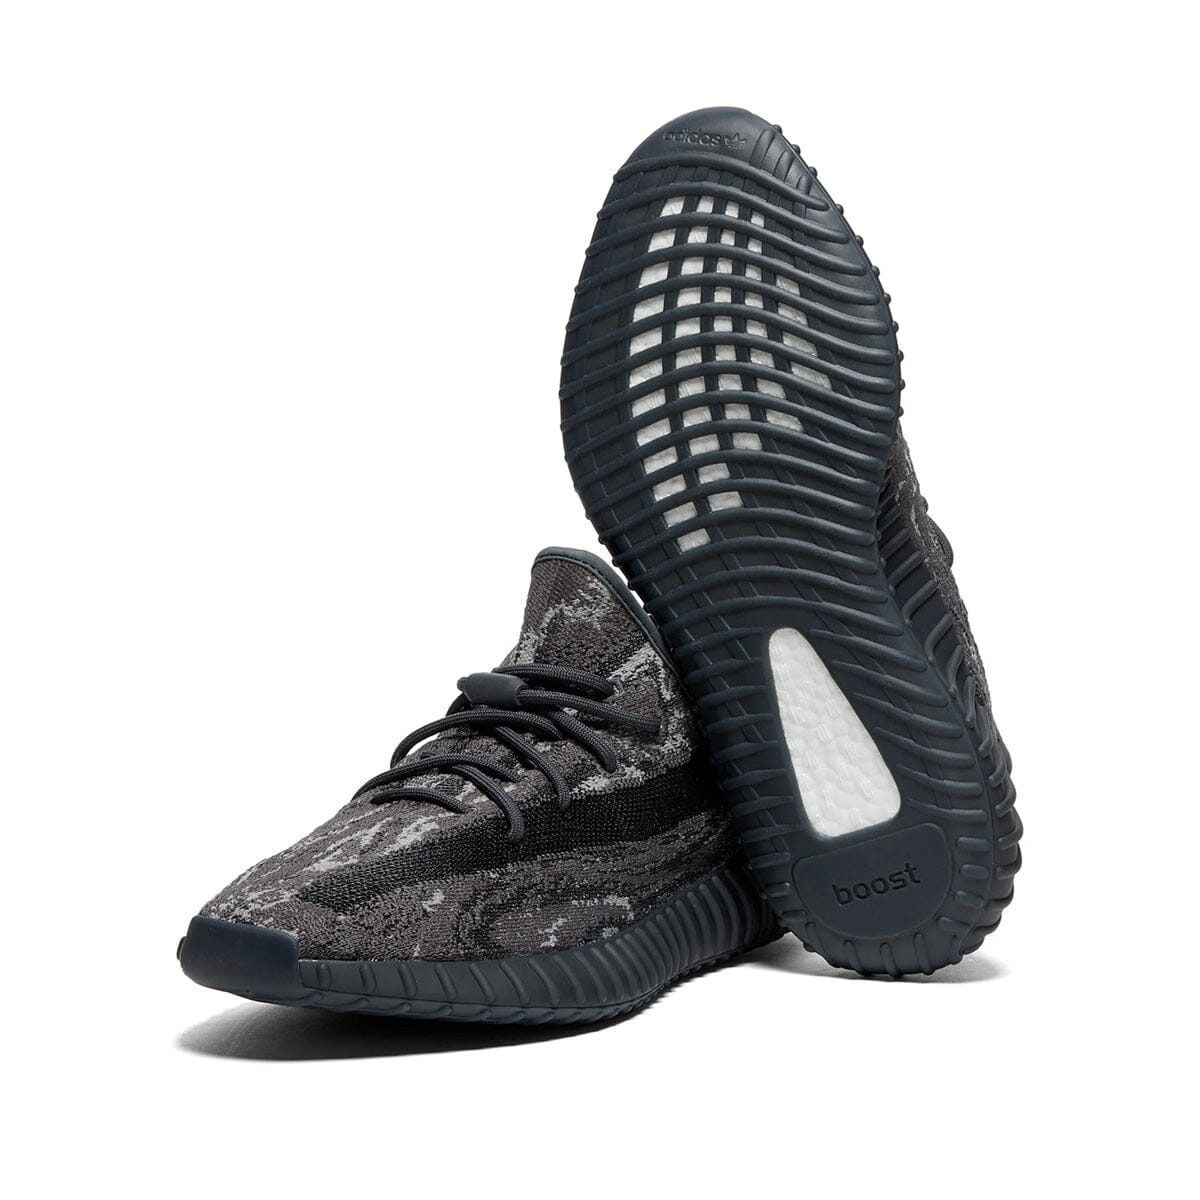 Adidas Yeezy Boost 350 V2 MX Dark Salt Yeezy Blizz Sneakers 